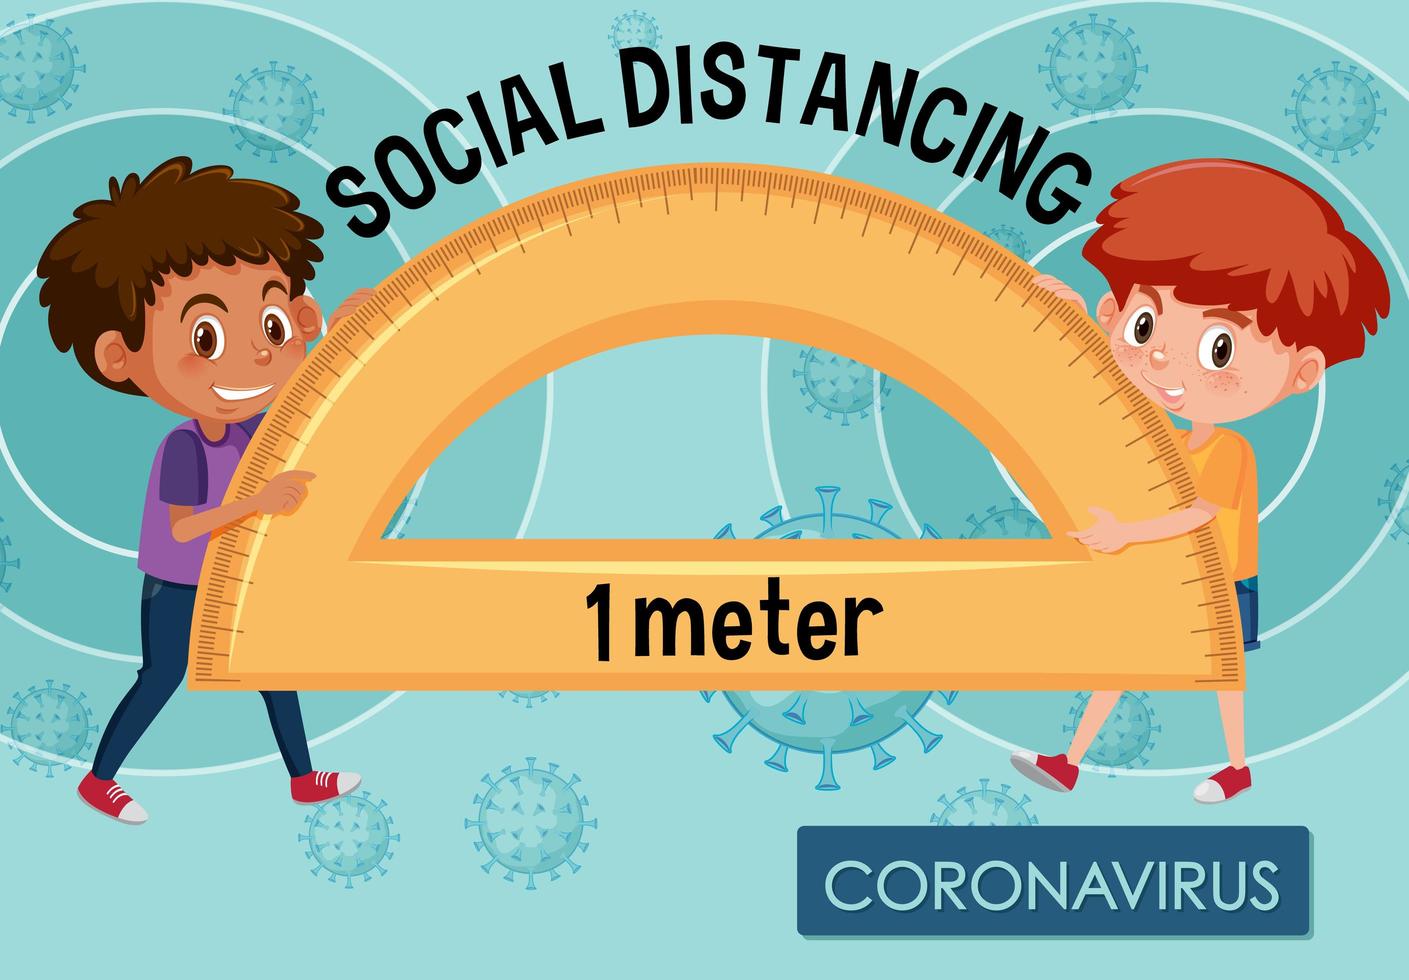 cartellonistica coronavirus con ragazzi e distanza sociale vettore